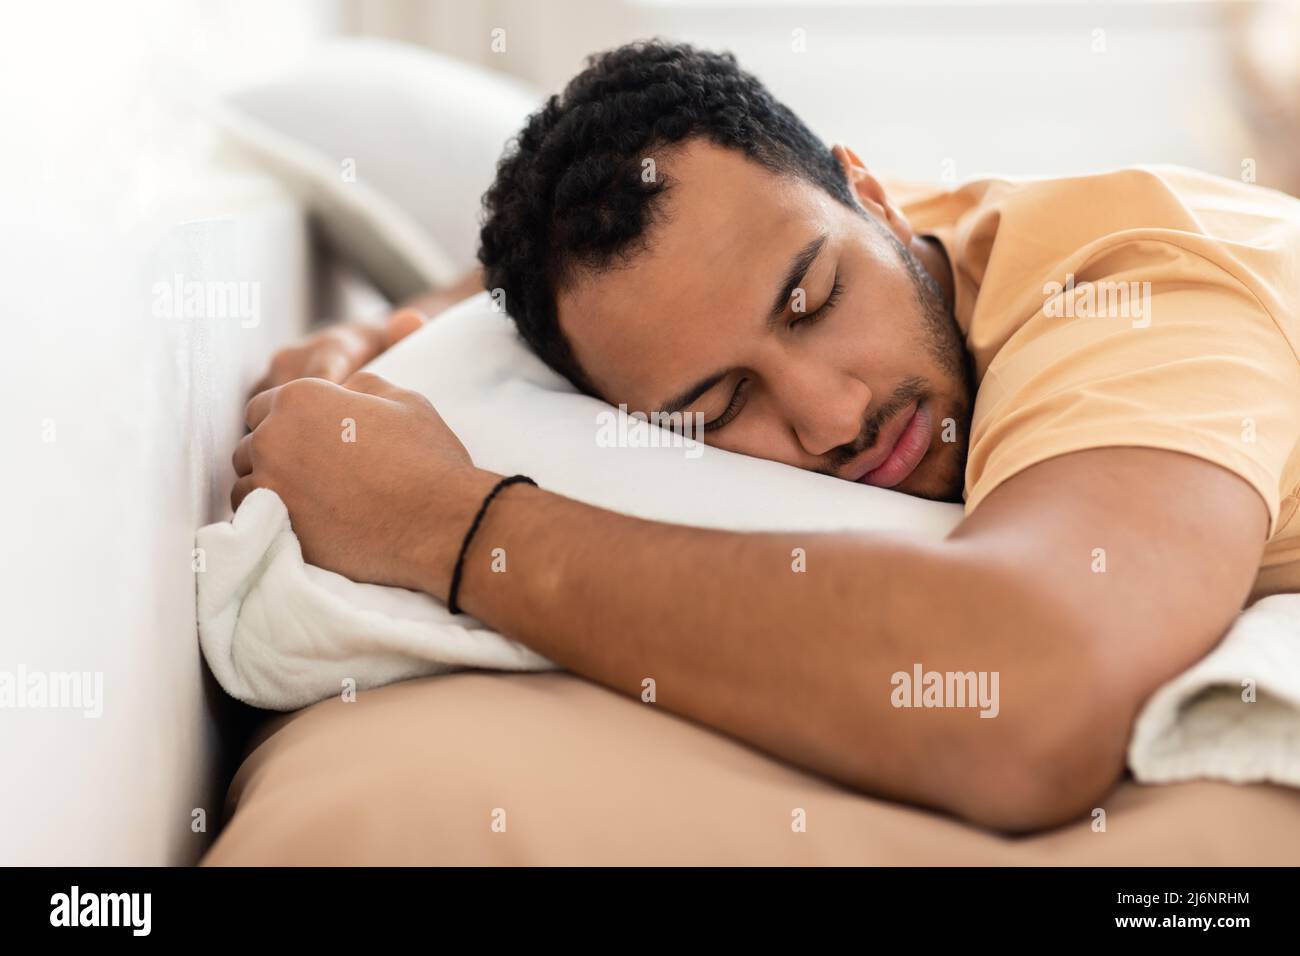 Hombre del Medio Oriente que se está durmiendo, se está tirando sobre el estómago abrazando una almohada en el interior Foto de stock